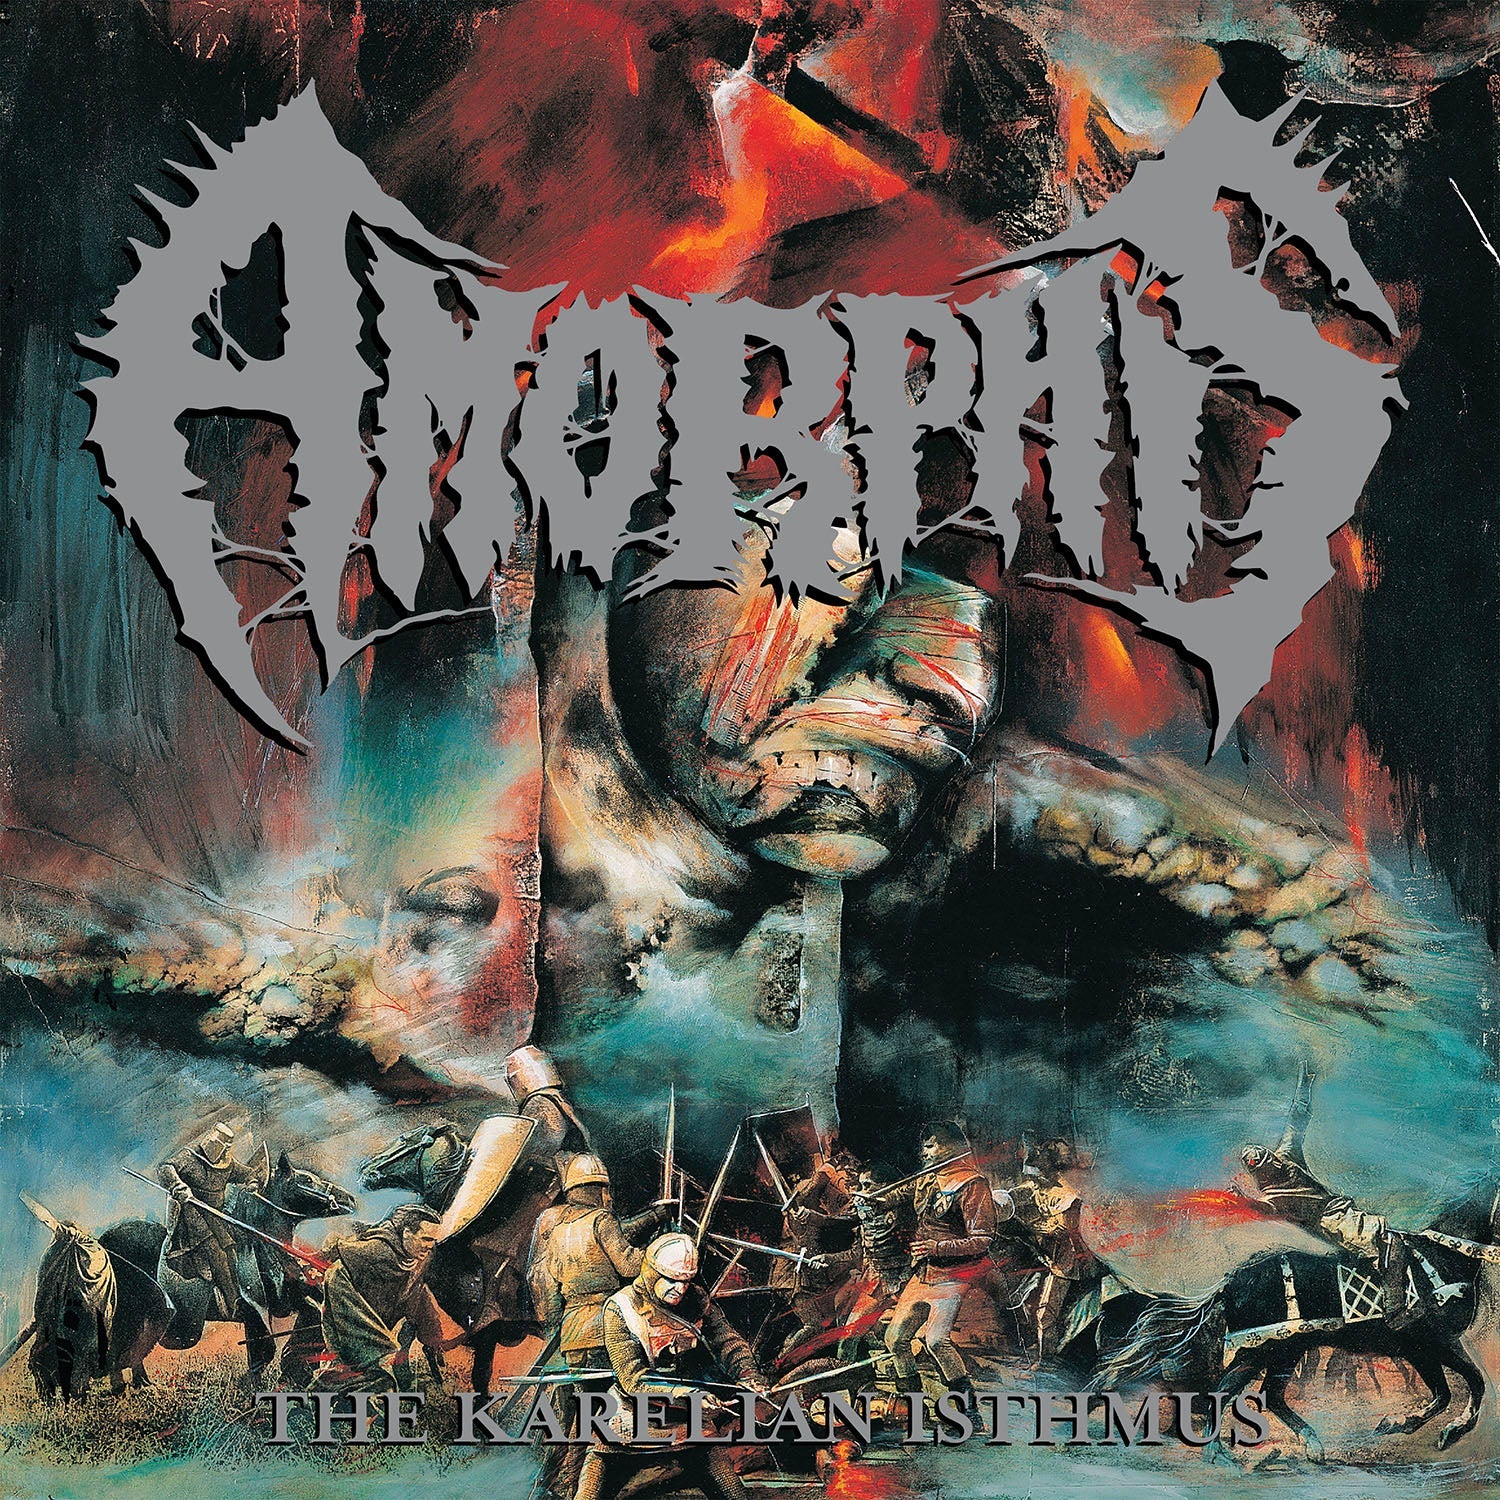 Amorphis "The Karelian Isthmus"